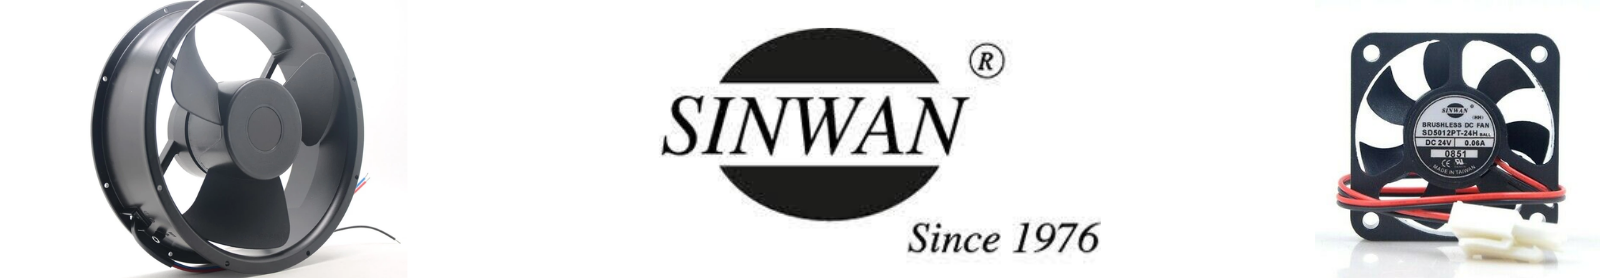 Sinwan